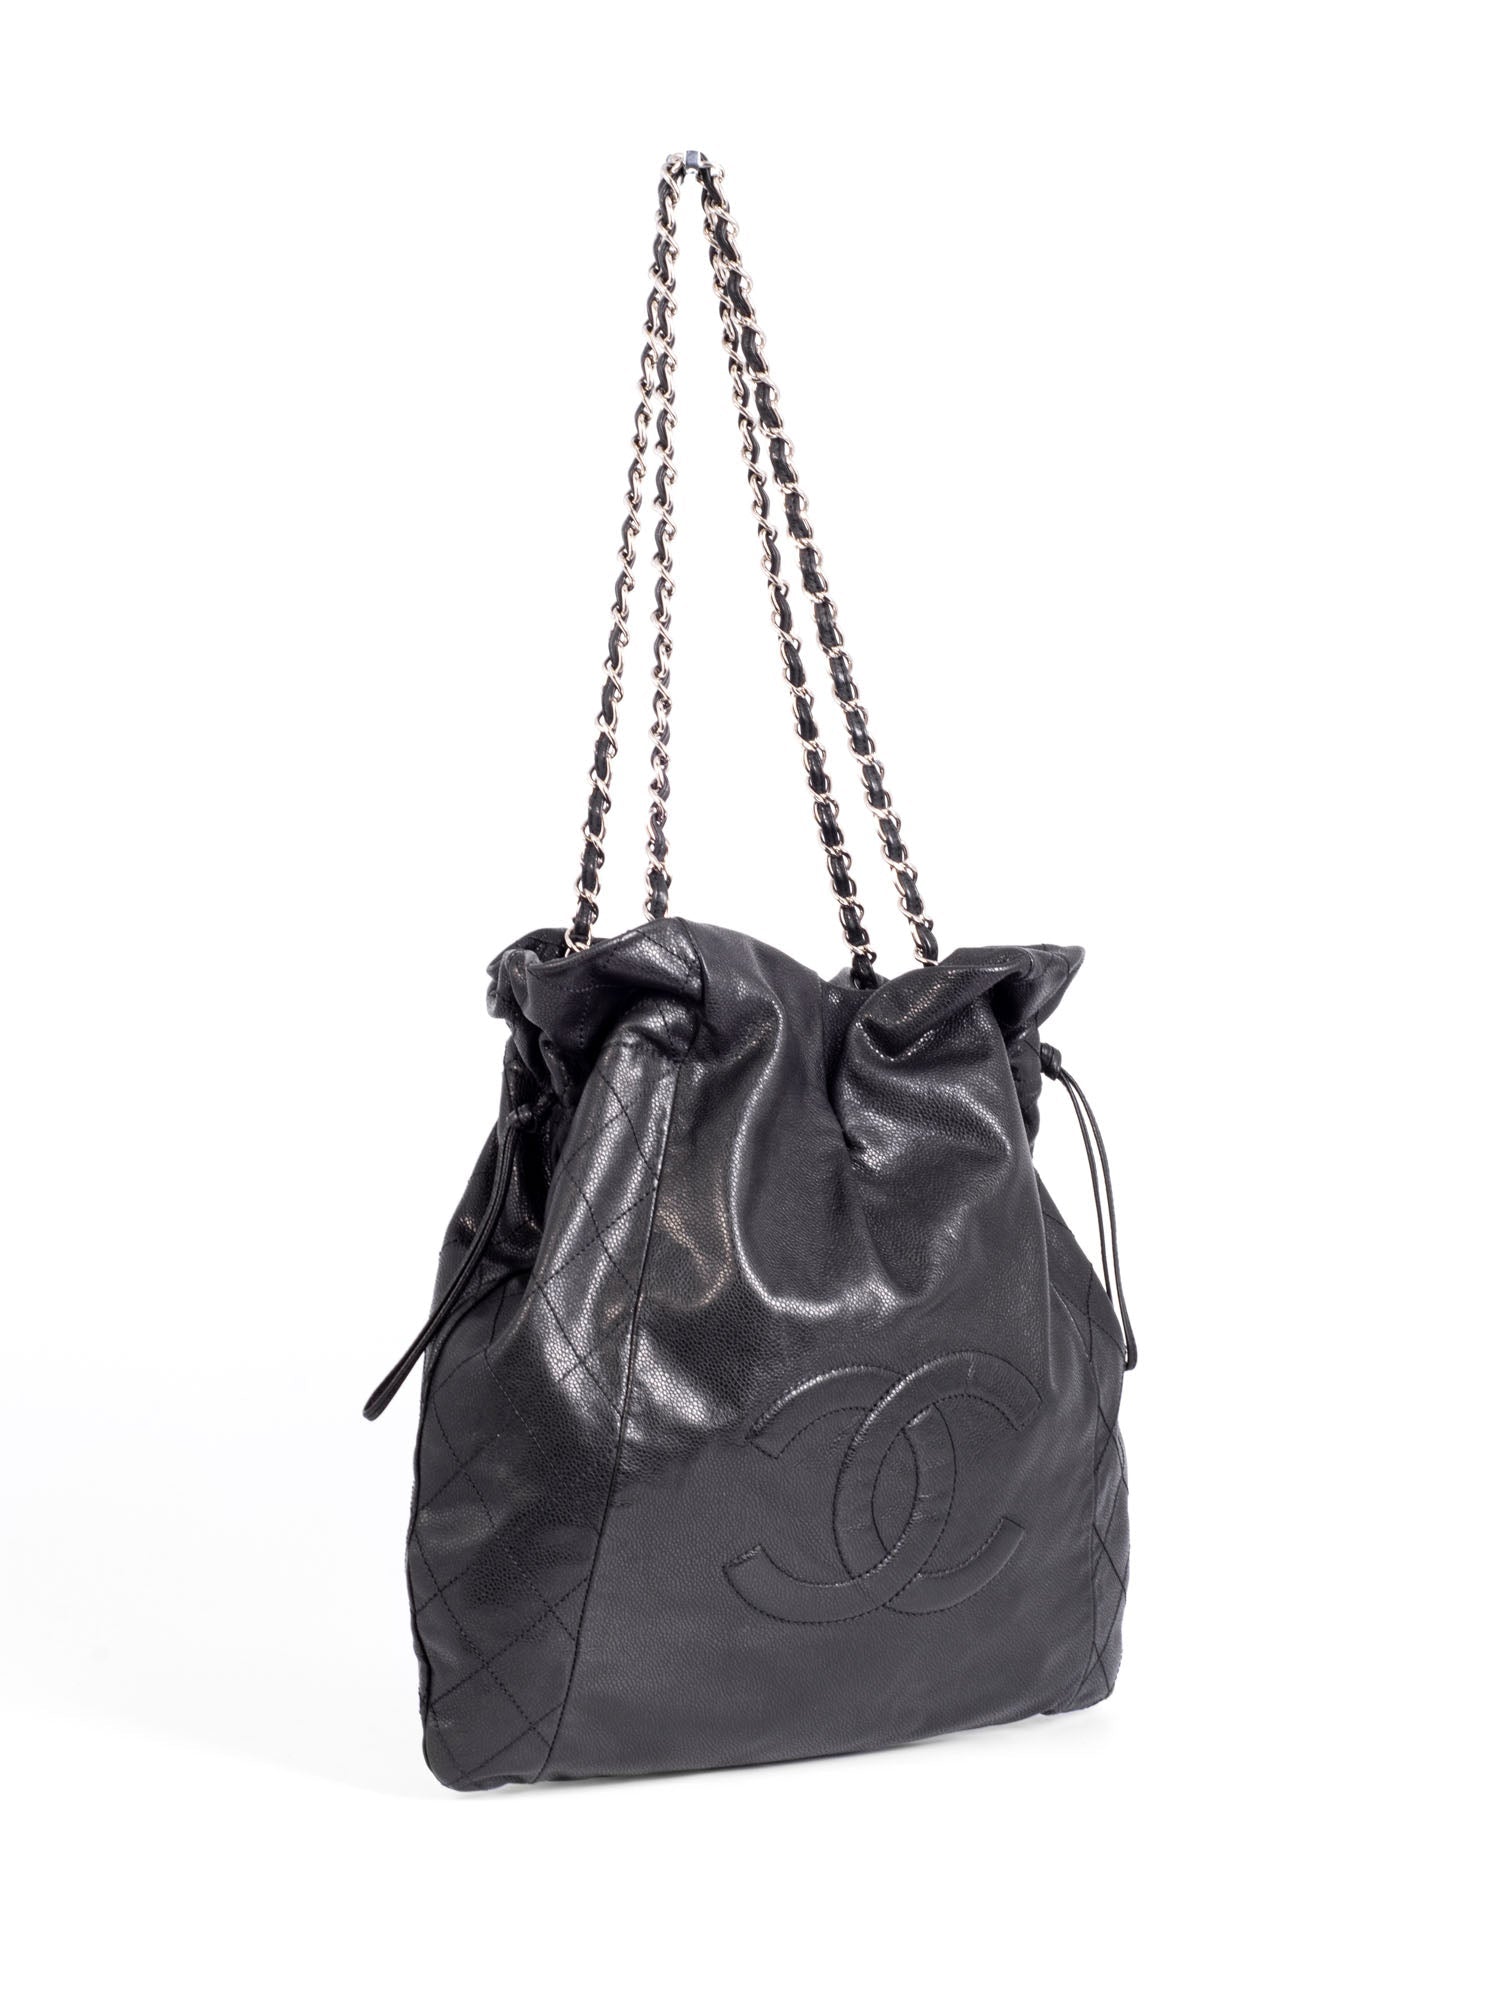 CHANEL Quilted Caviar Leather CC Logo Large Shopper Bag Black-designer resale